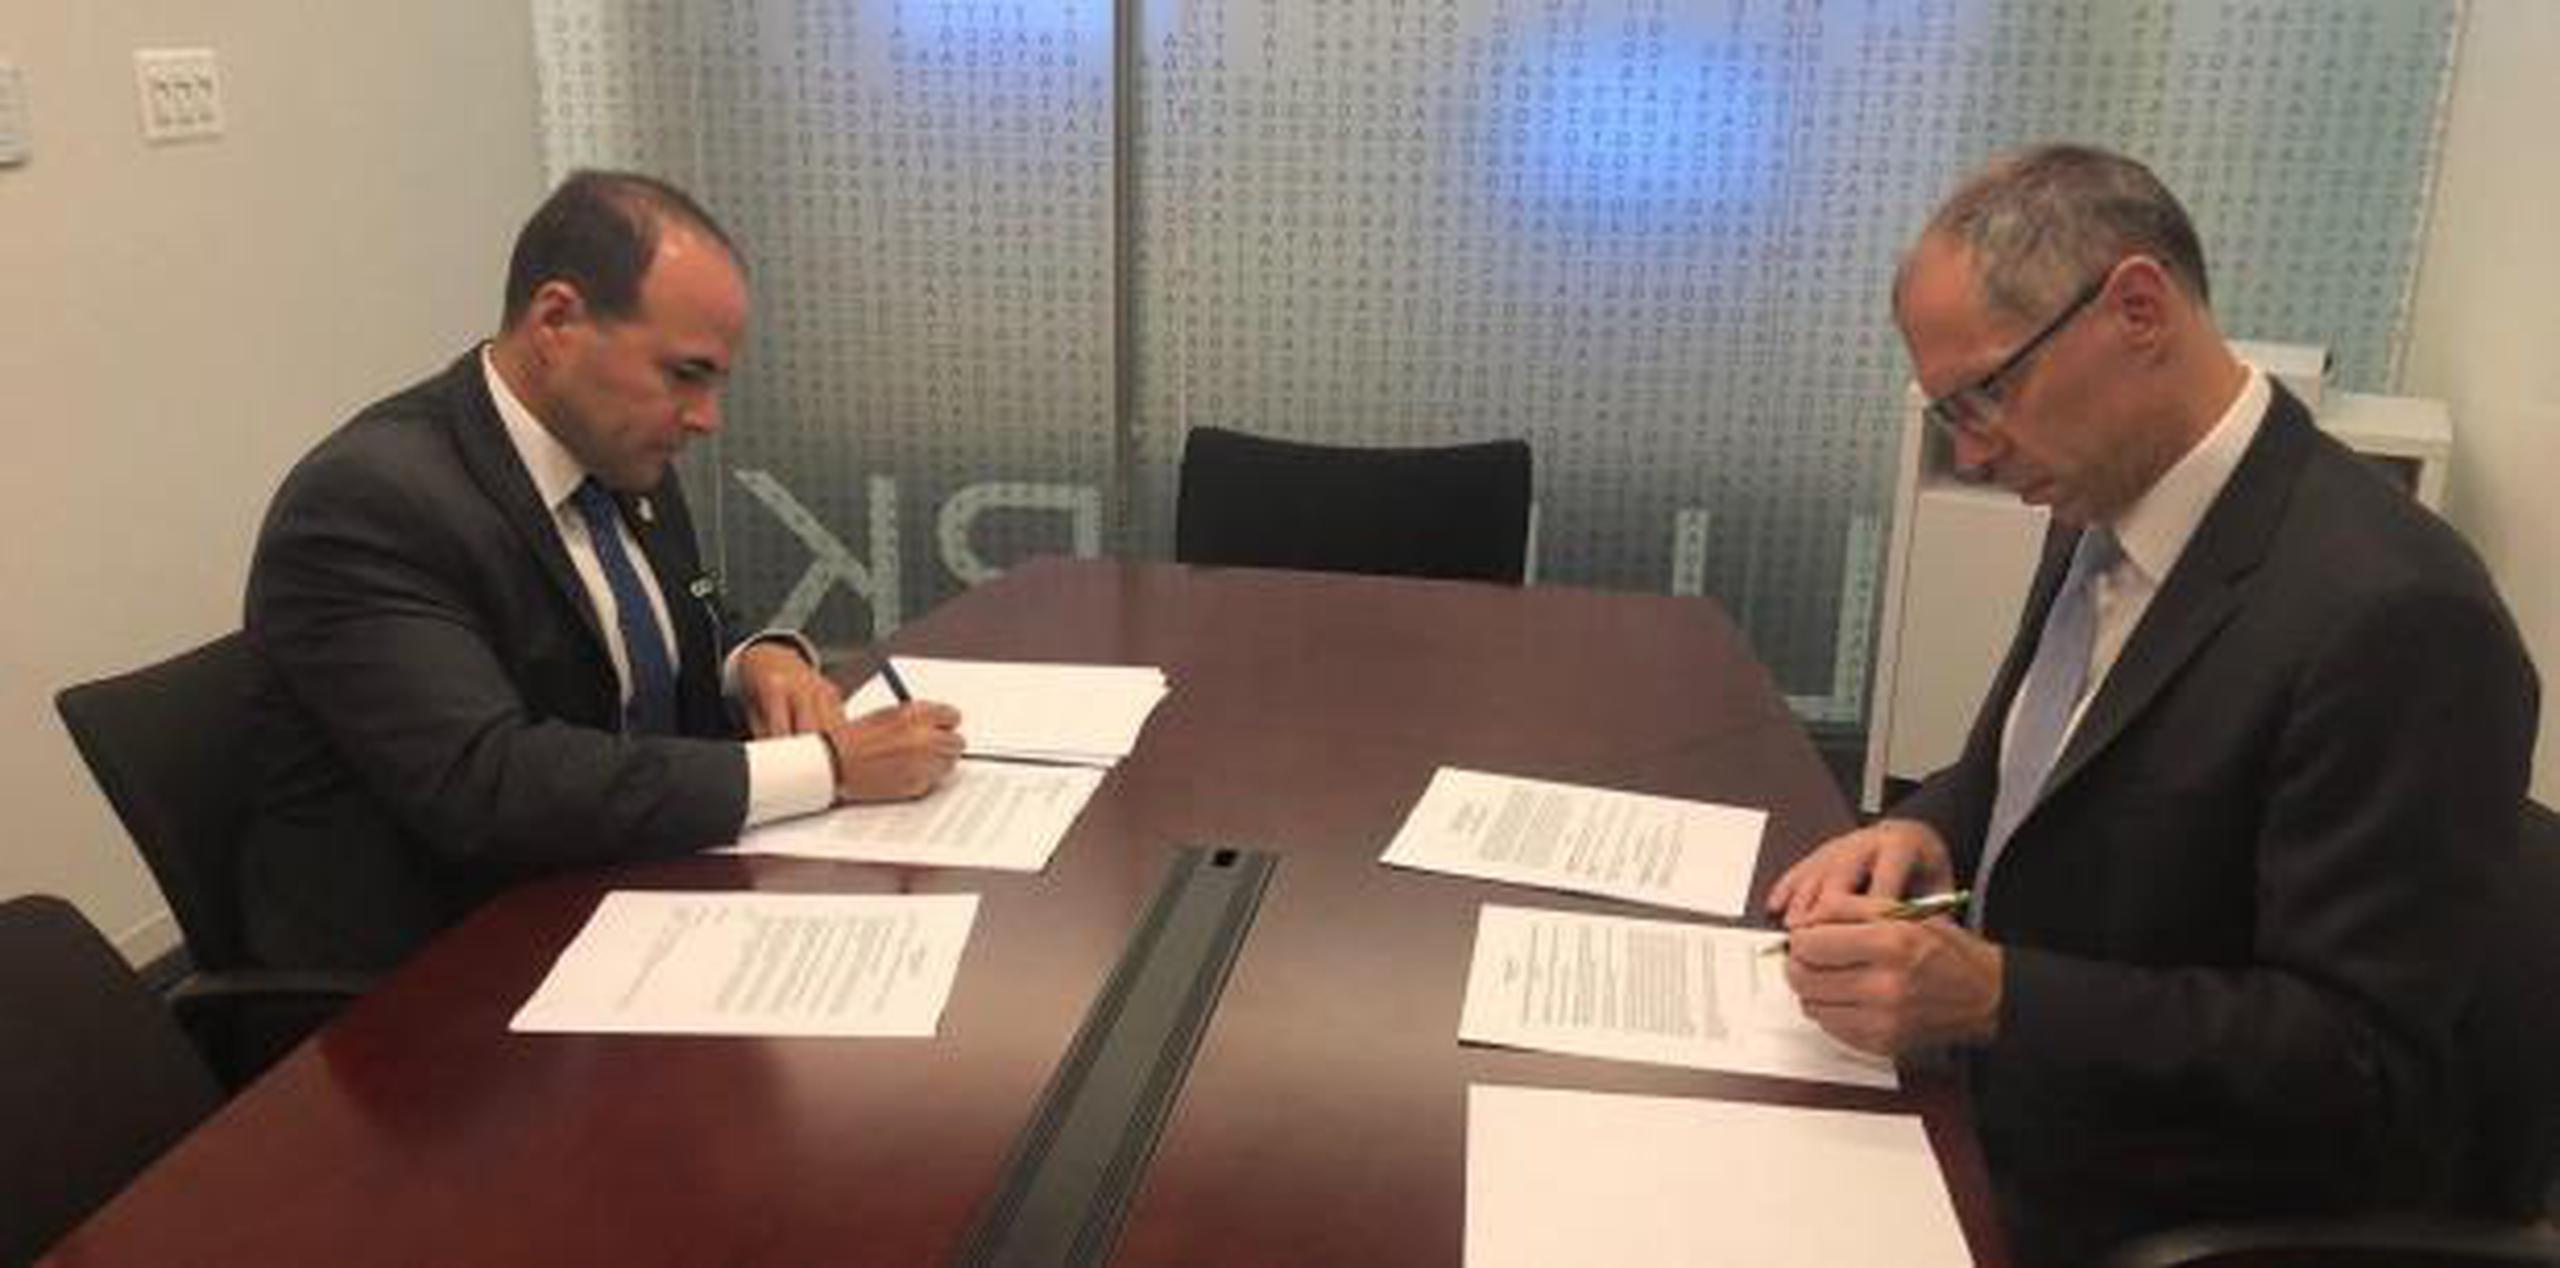 El secretario del DSP, Elmer L. Román González y Michael Cariola, CEO y presidente de Bode, firman el contrato para el análisis de los safe kits. (Suministrada)